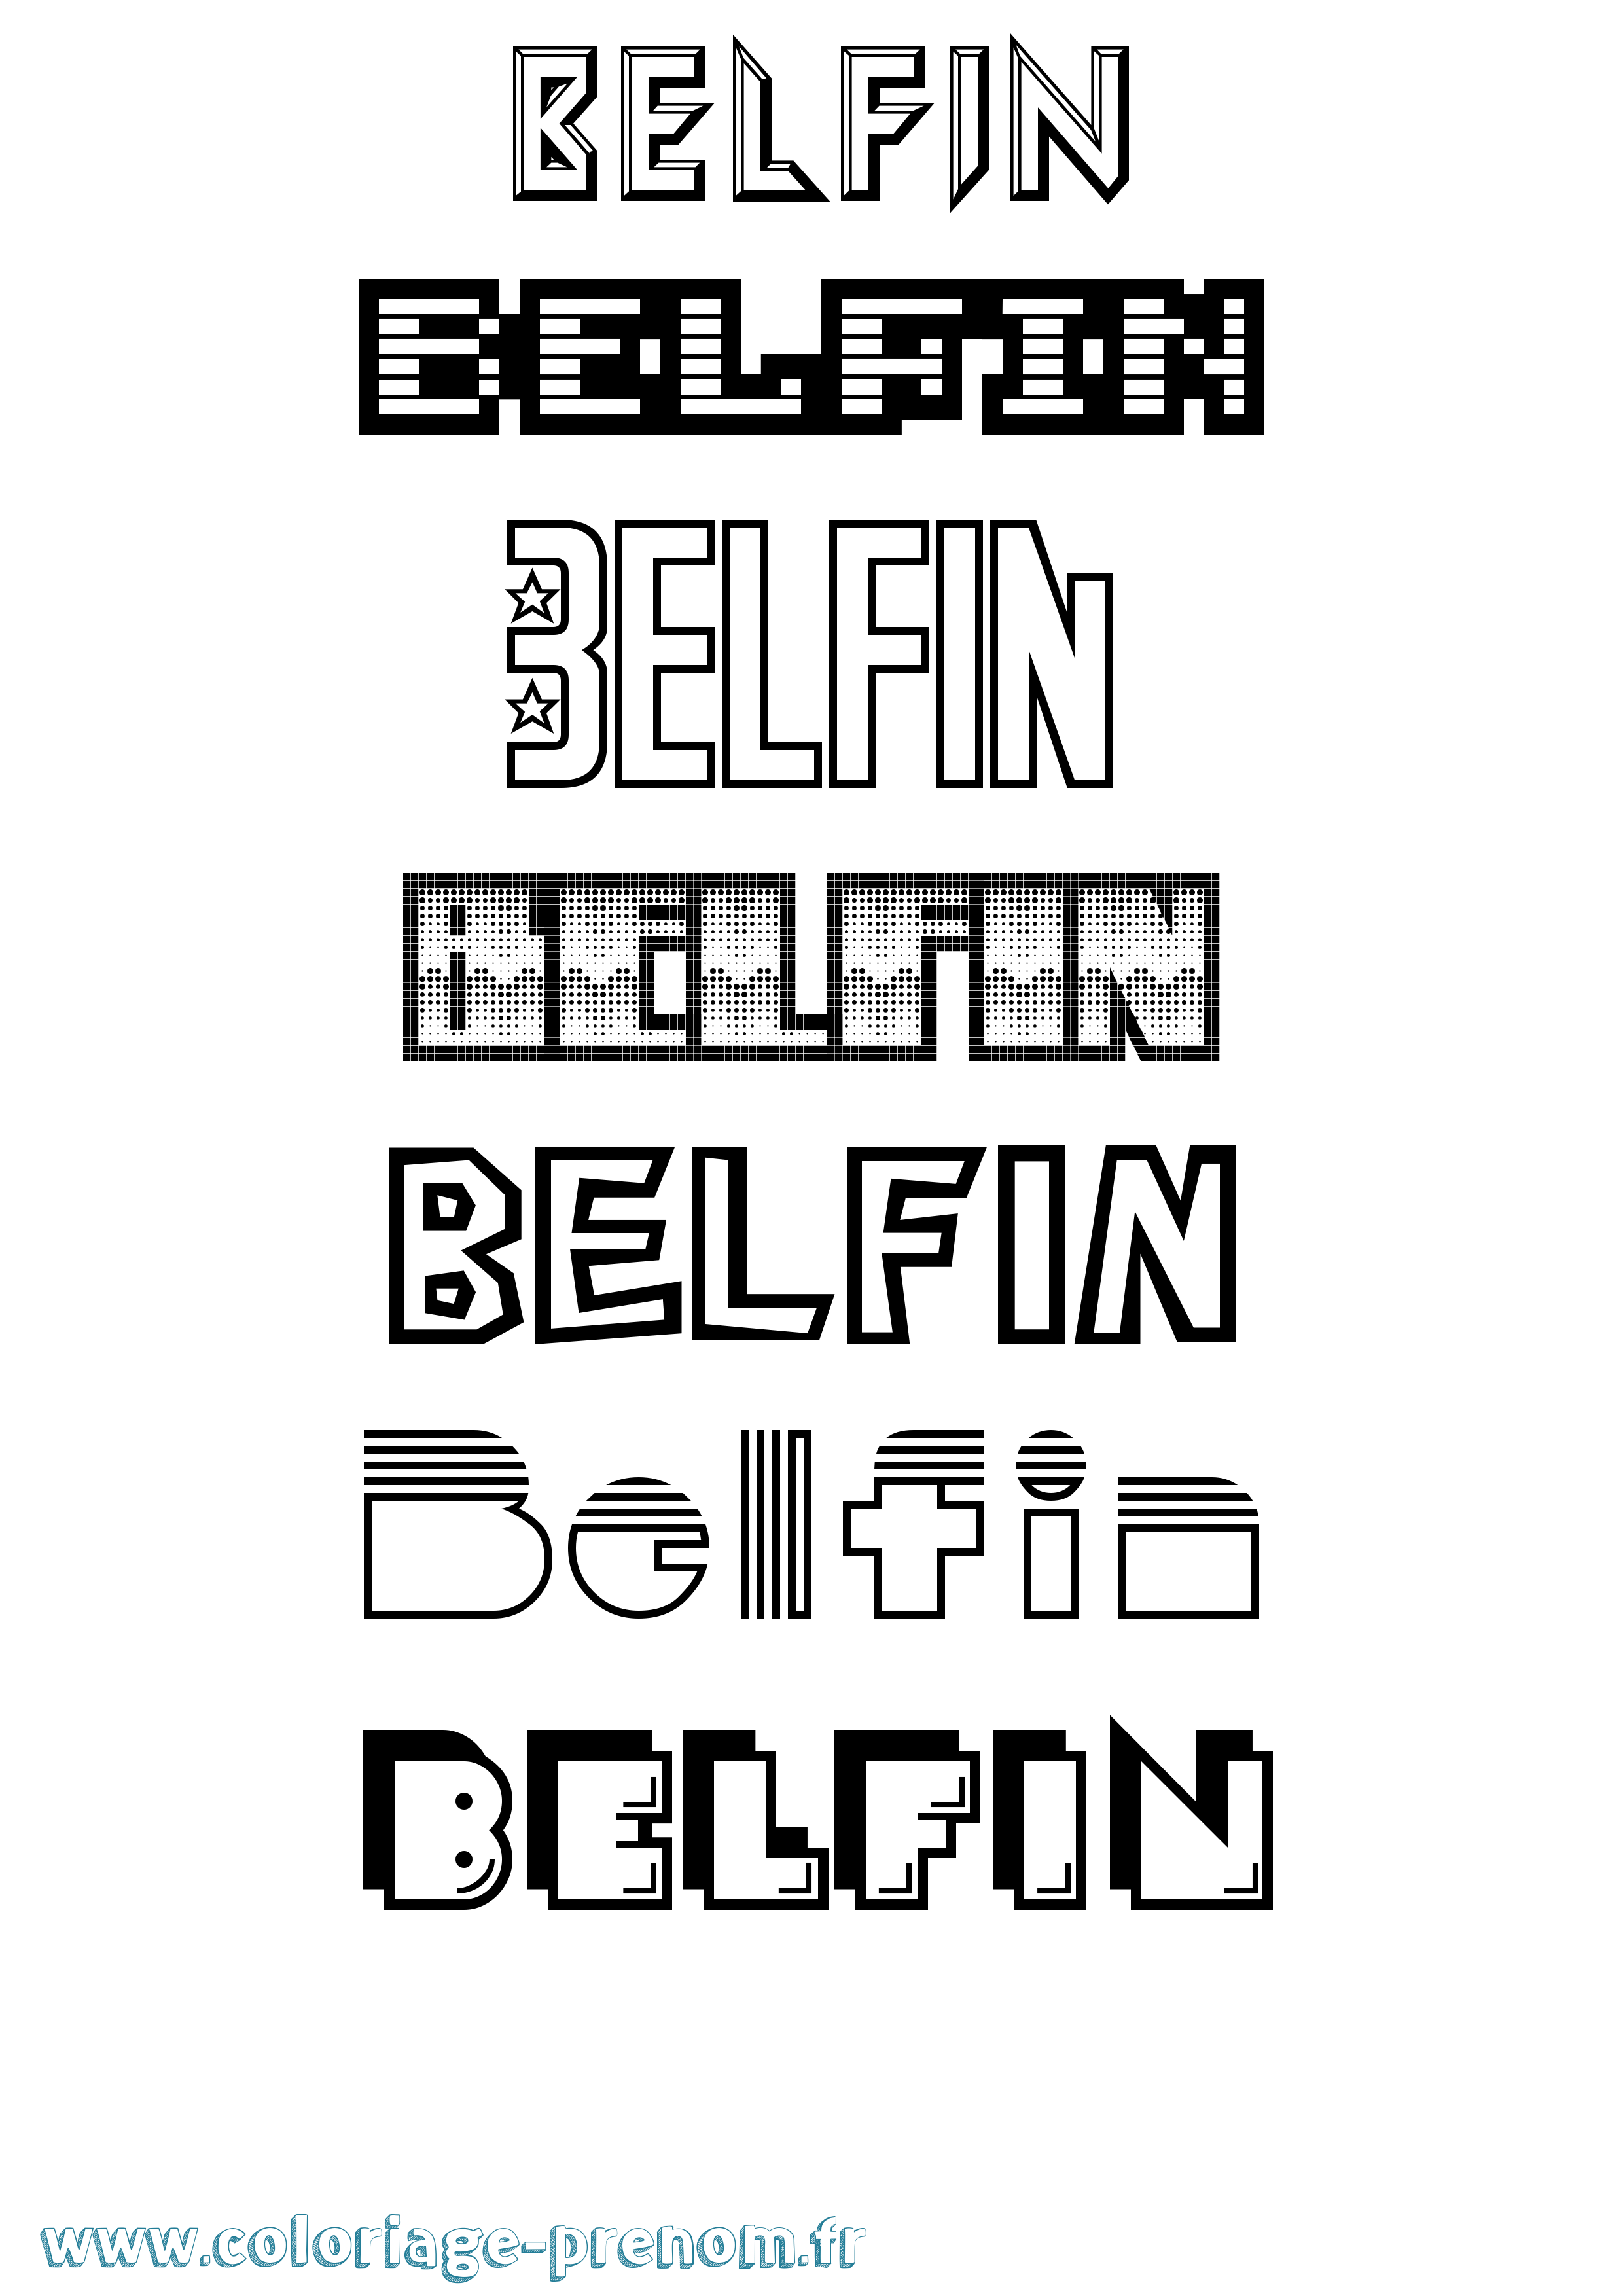 Coloriage prénom Belfin Jeux Vidéos